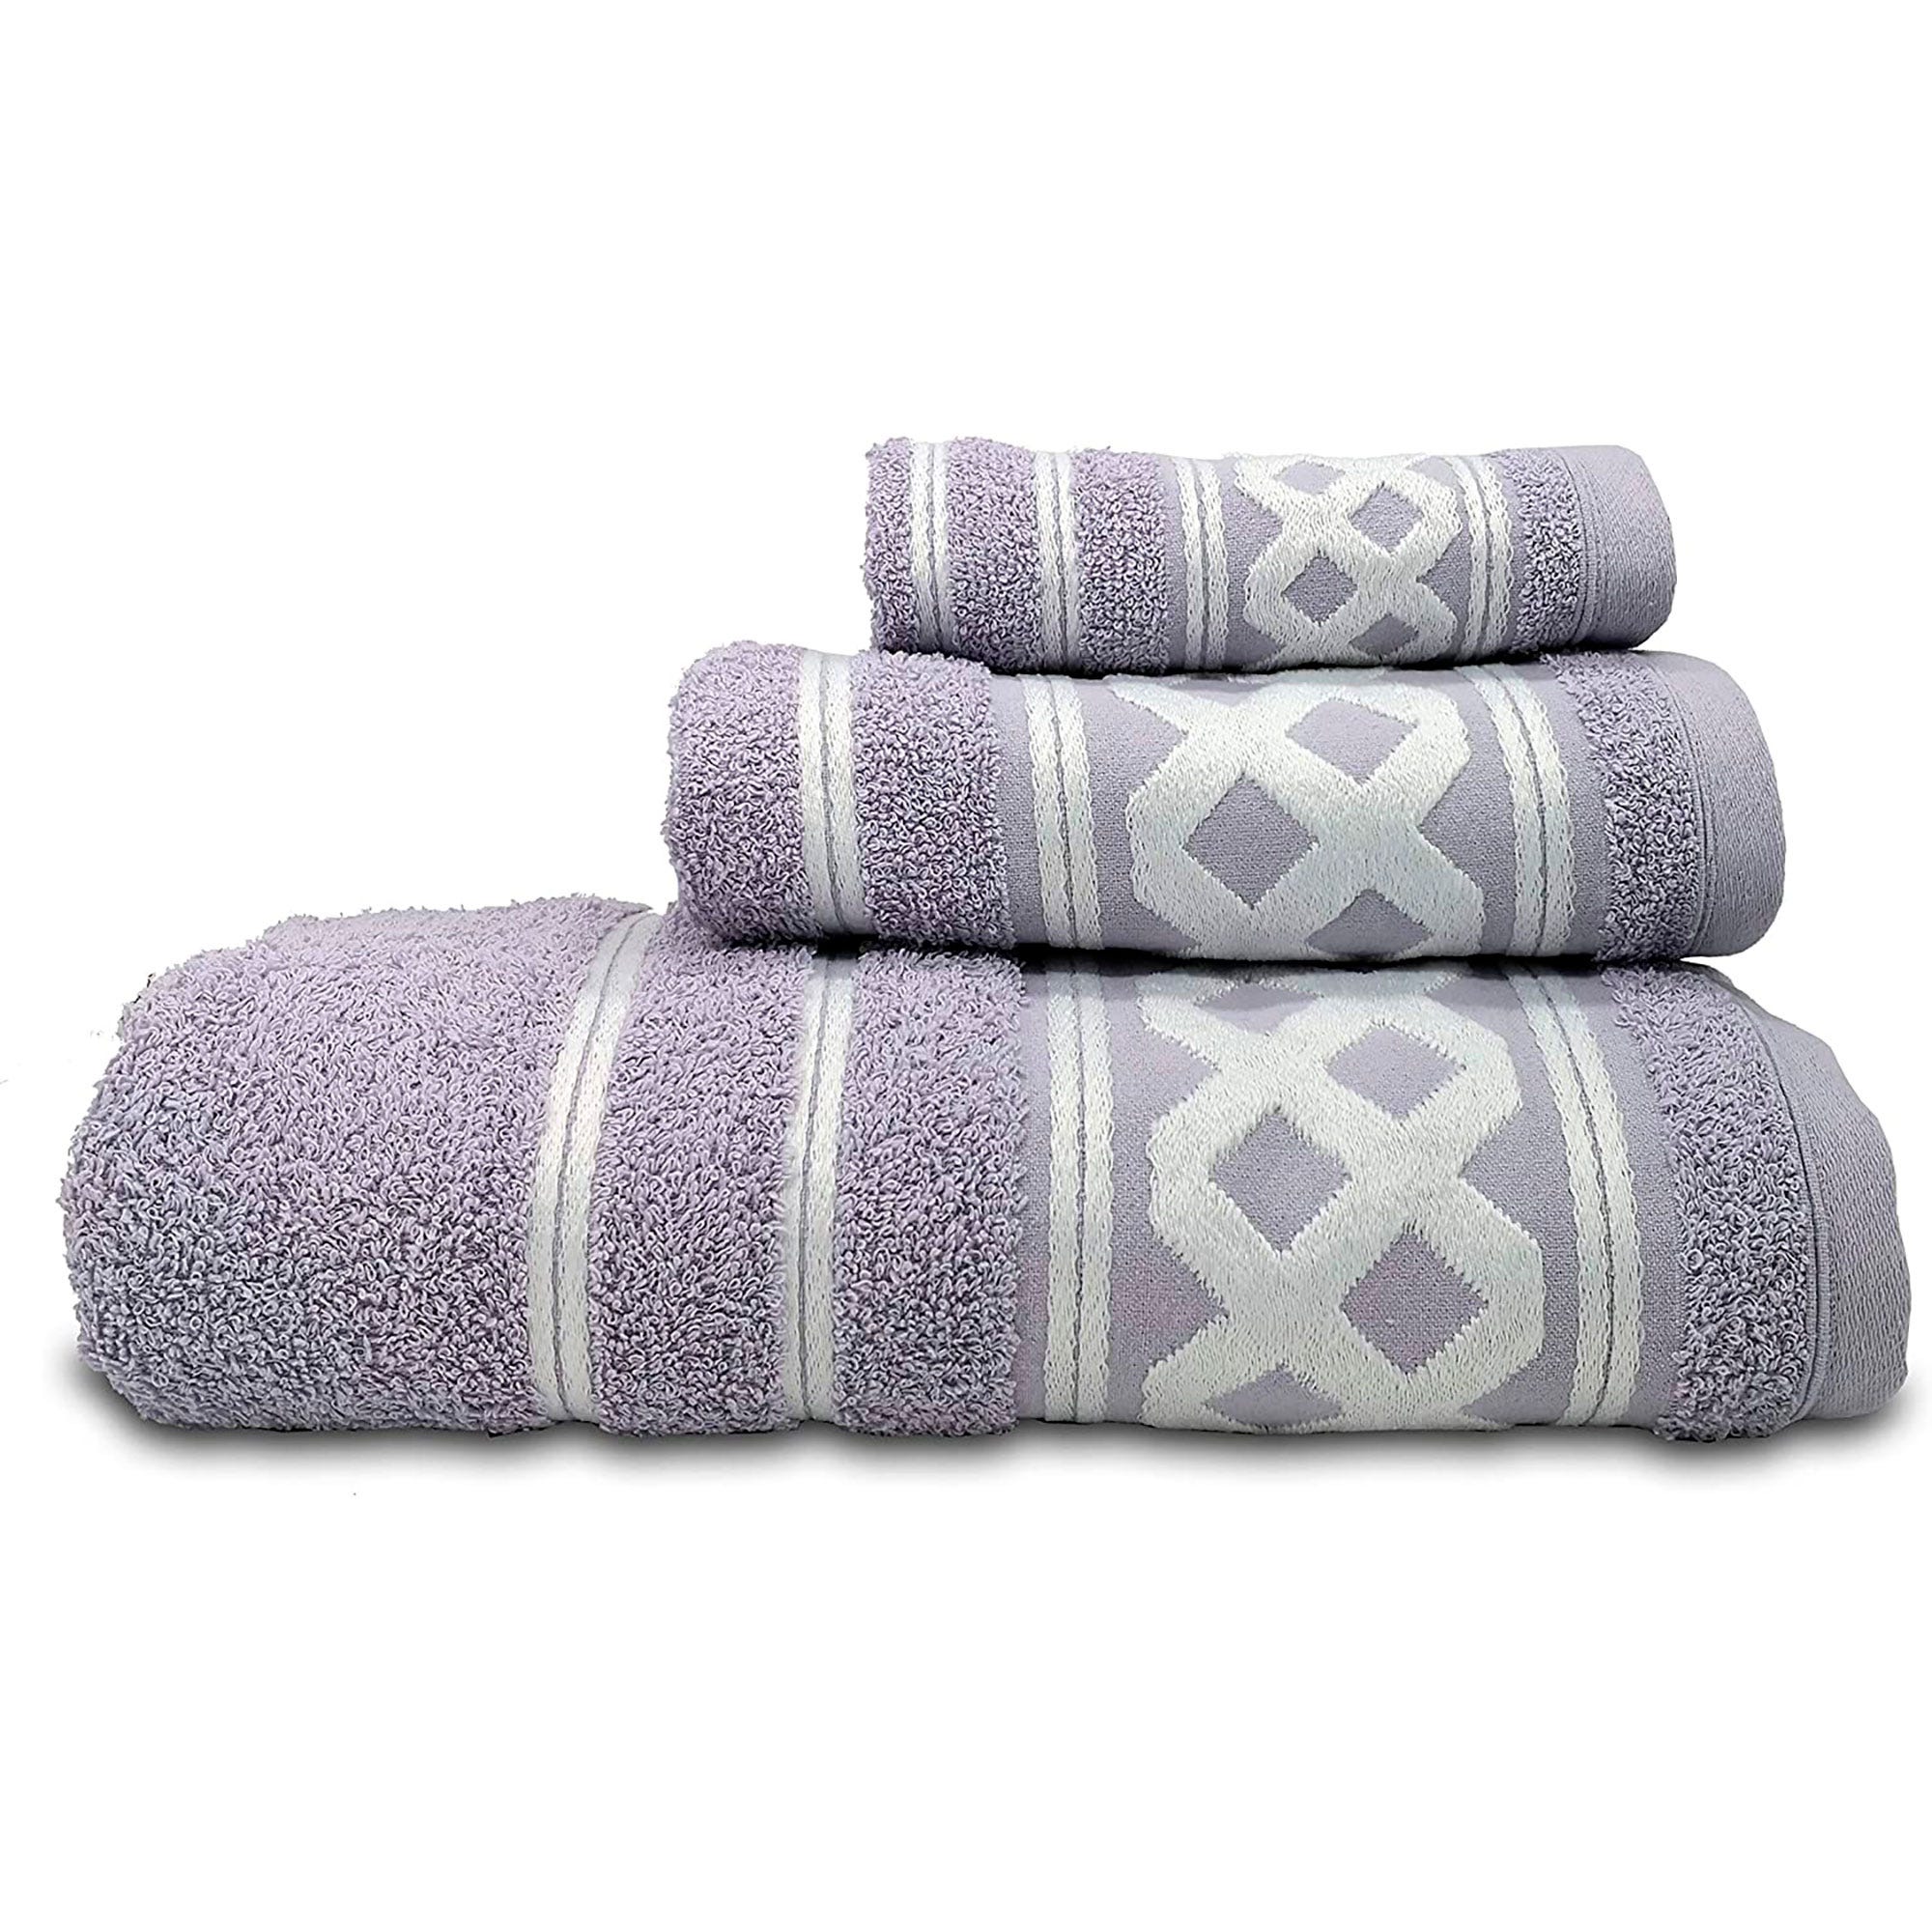 Asciugamani set 3 pezzi spugna di puro cotone idrofilo-colori moderni  PANTONE 2020 - Grande+Ospite +Telo